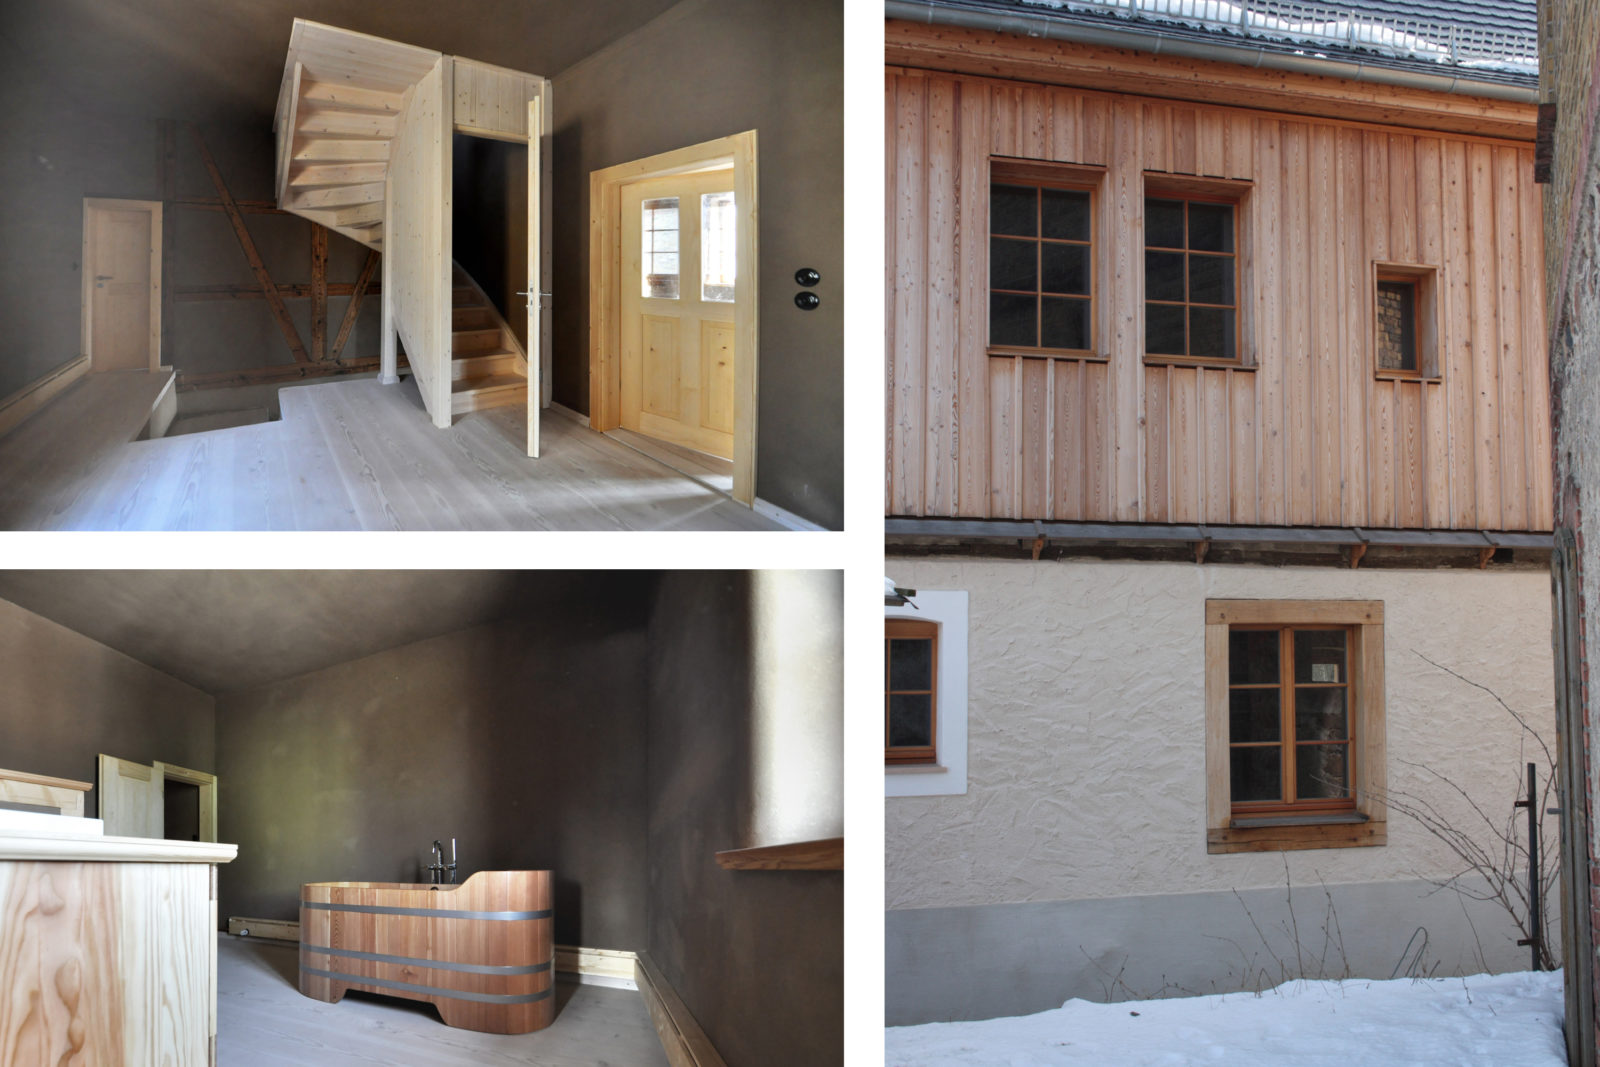 Umbau und Sanierung Baudenkmal Rentmeisterhaus in Püchau - Diele mit Treppe, Badezimmer und Außenansicht